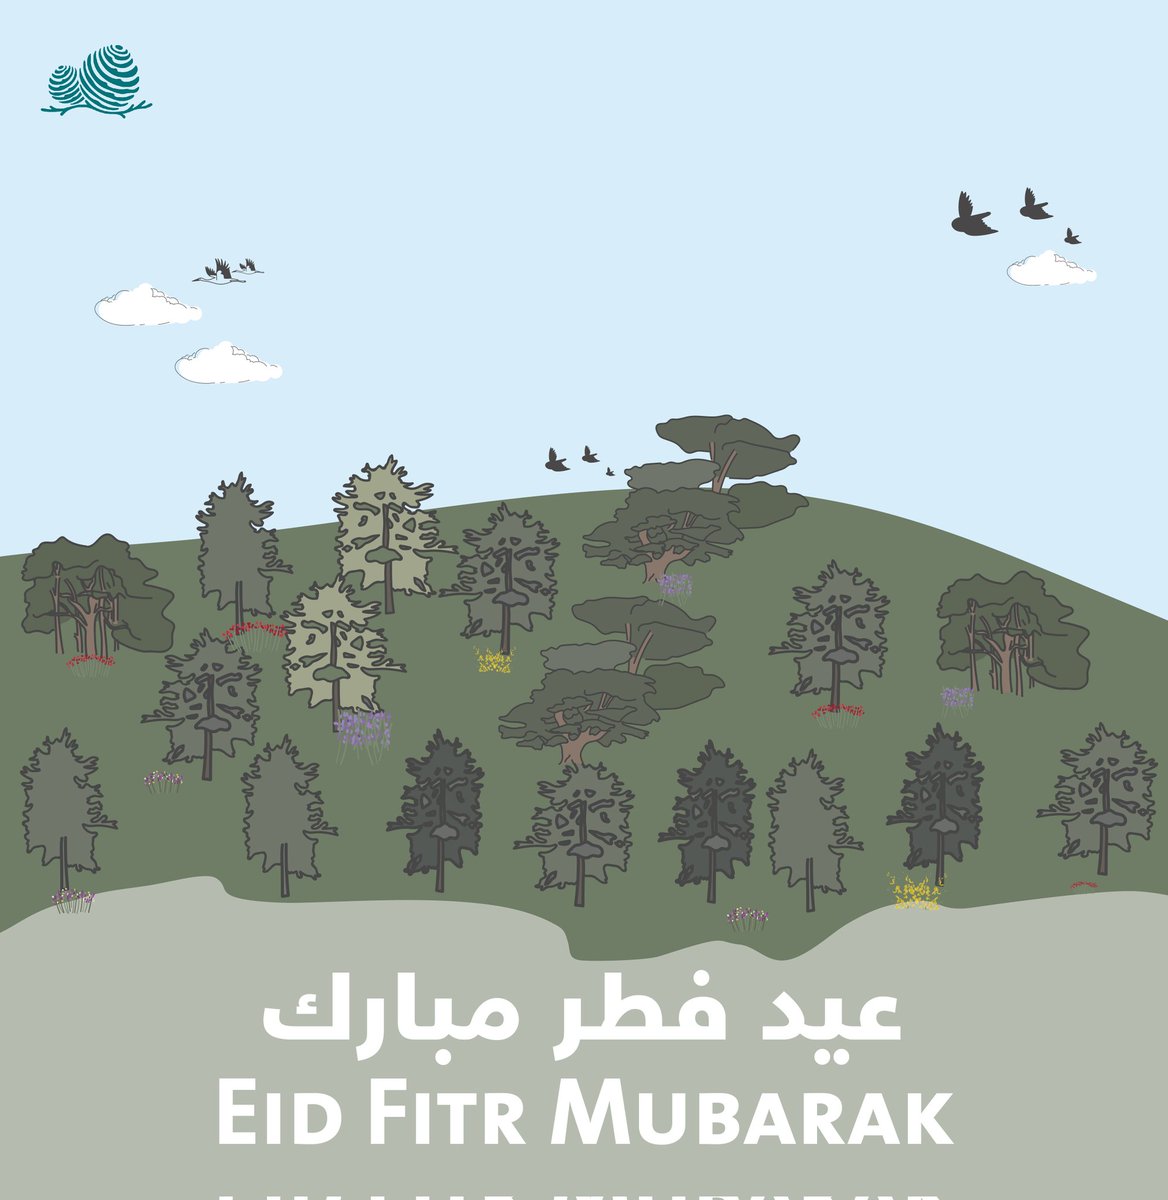 عيد فطر مبارك - كل عام وأنتم بخير Eid Fitr Mubarak #HappyEid #eidmubarak #eidelfitr